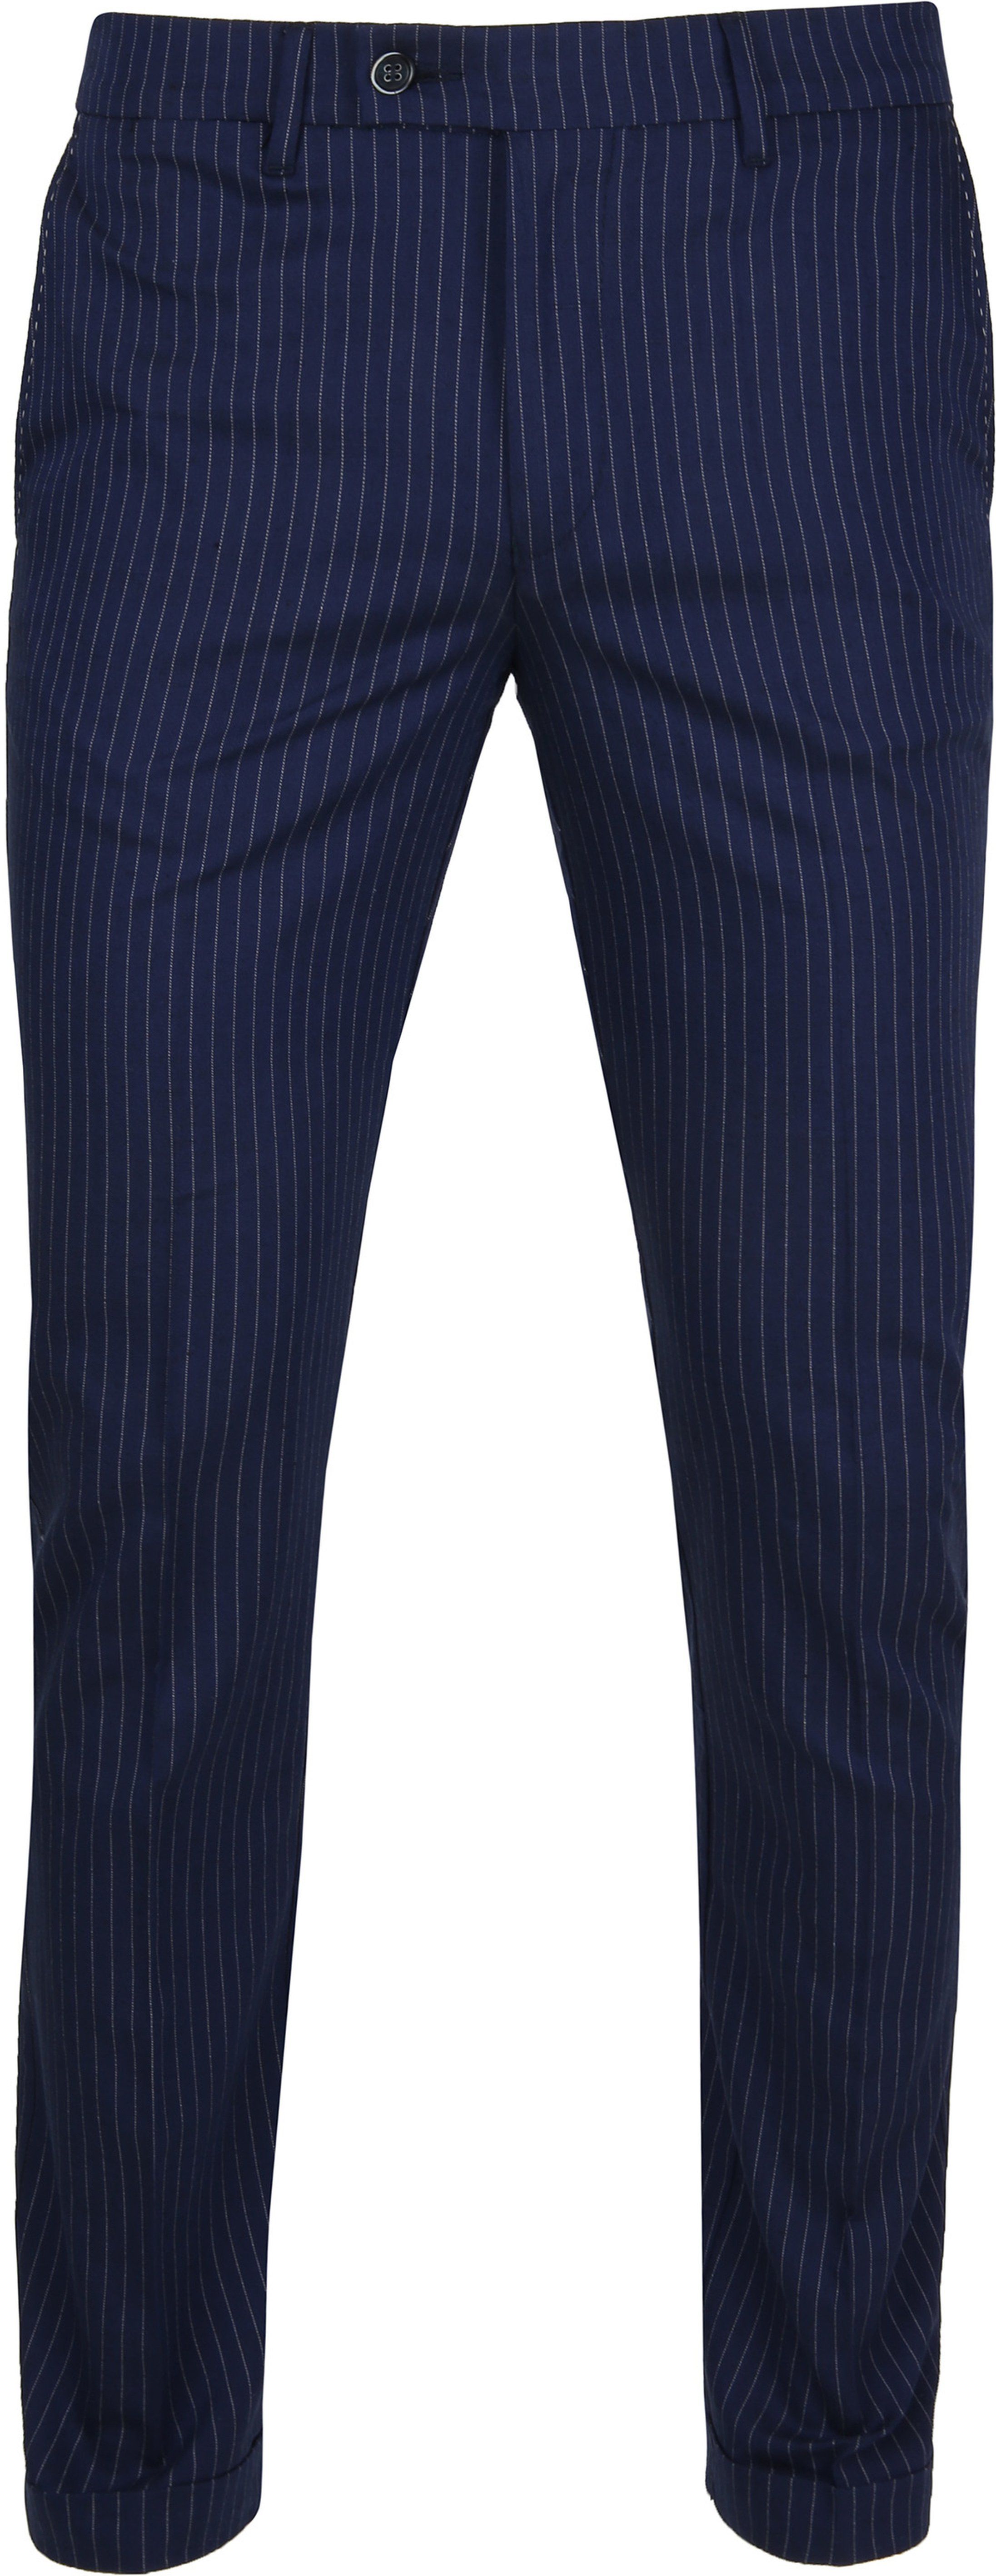 Suitable Pantalon Pisa Stripes Navy Dark Blue Blue size 36-R